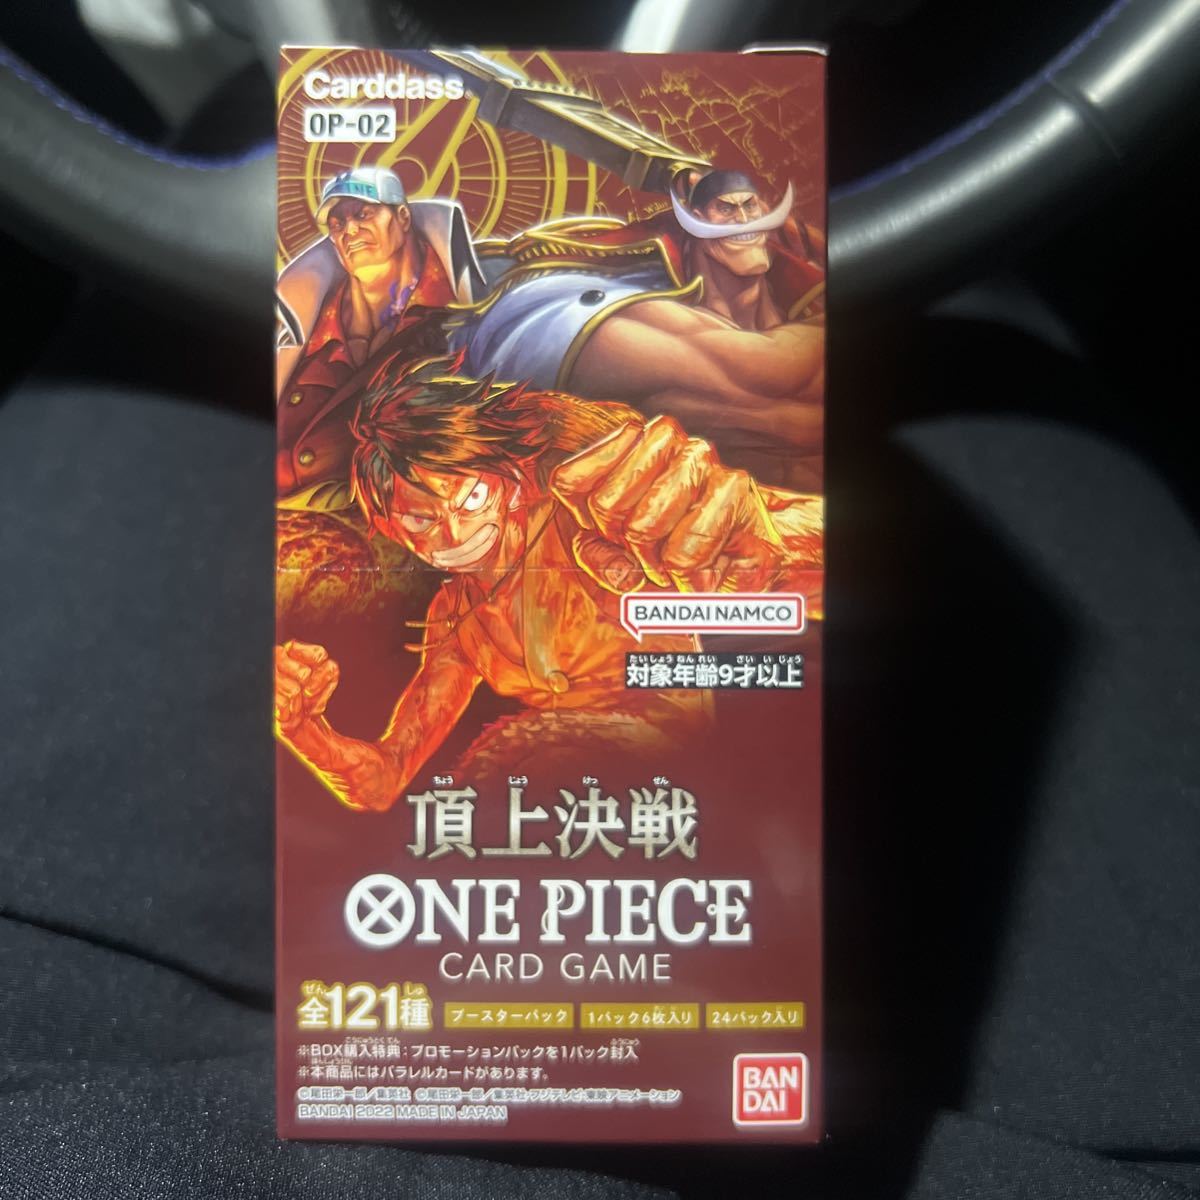 購入お買い得 【未開封BOX】 ONE PIECE カードゲーム 頂上決戦 OP-02 BOX ワンピース - drmilanovic.co.rs